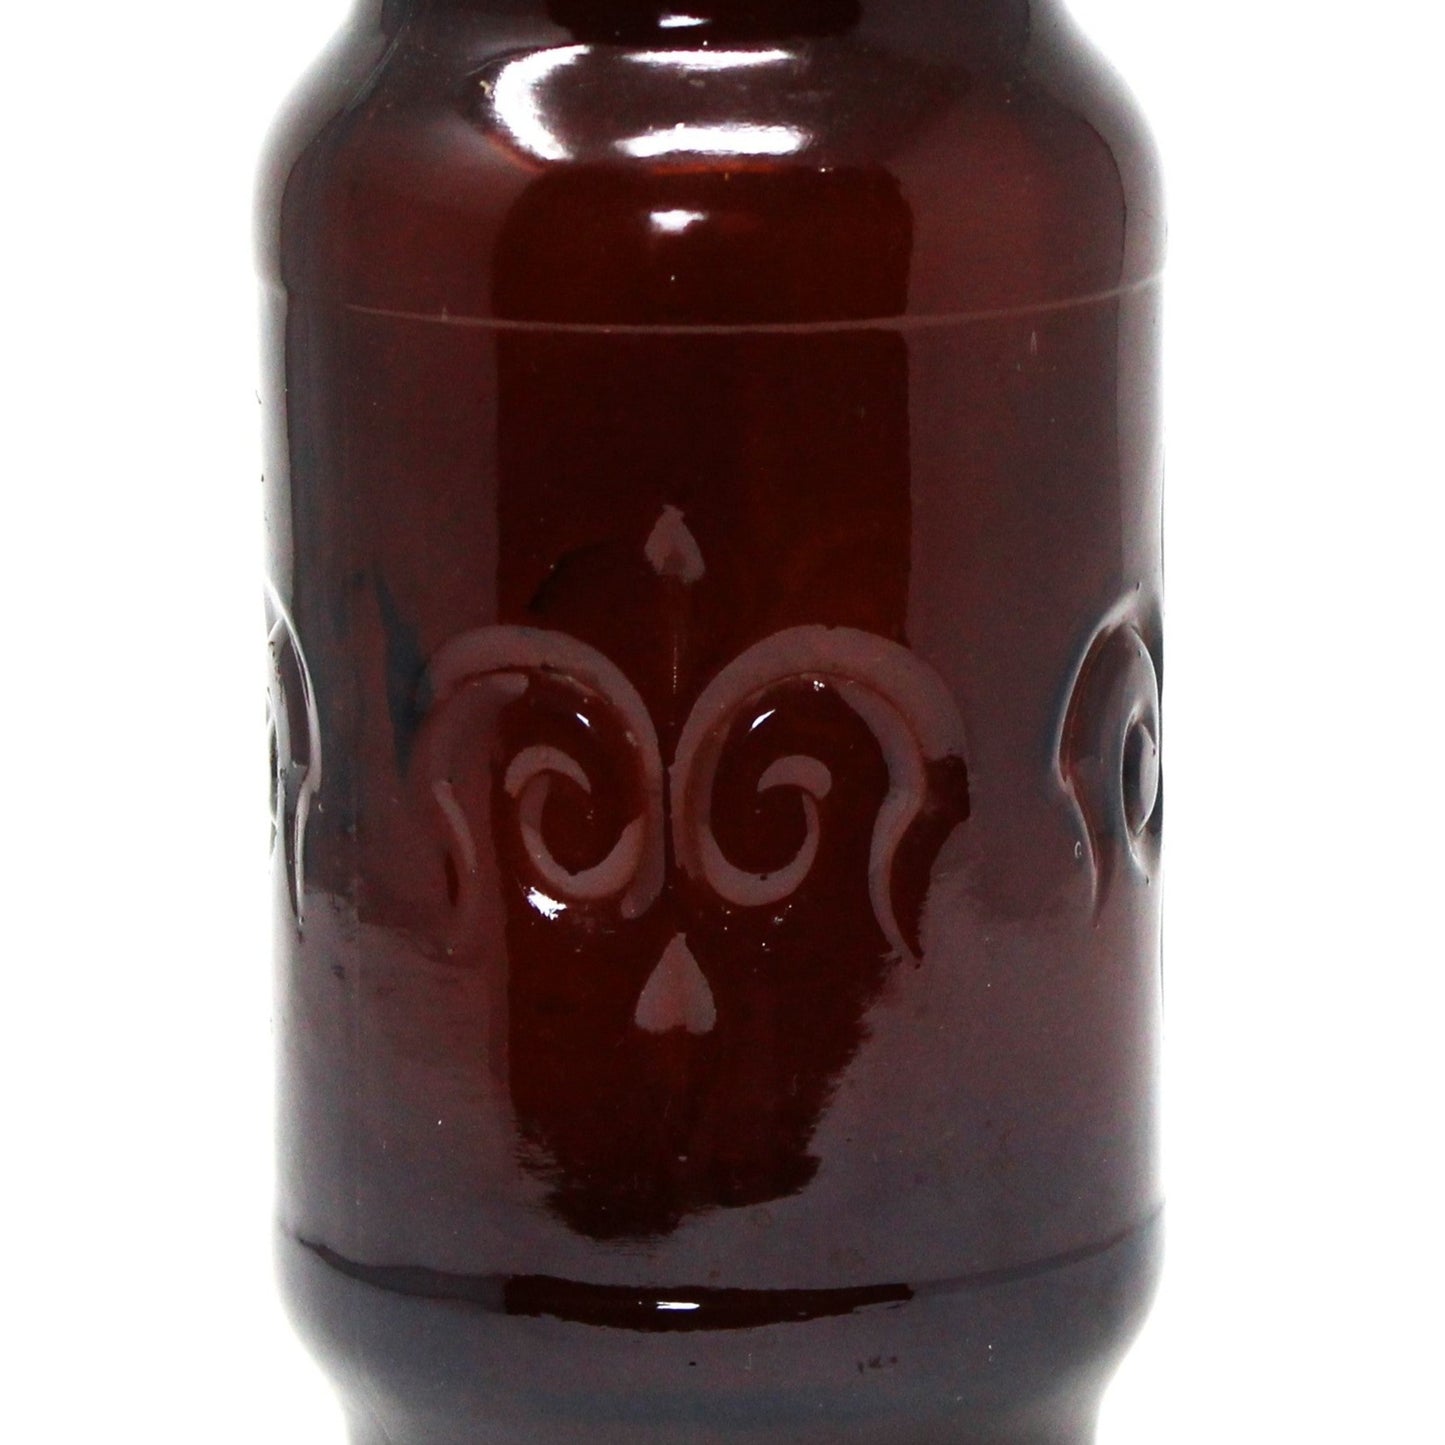 Canister, Borden Cremora Promotional Brown Glass Jar, Fleur de Lis, Vintage